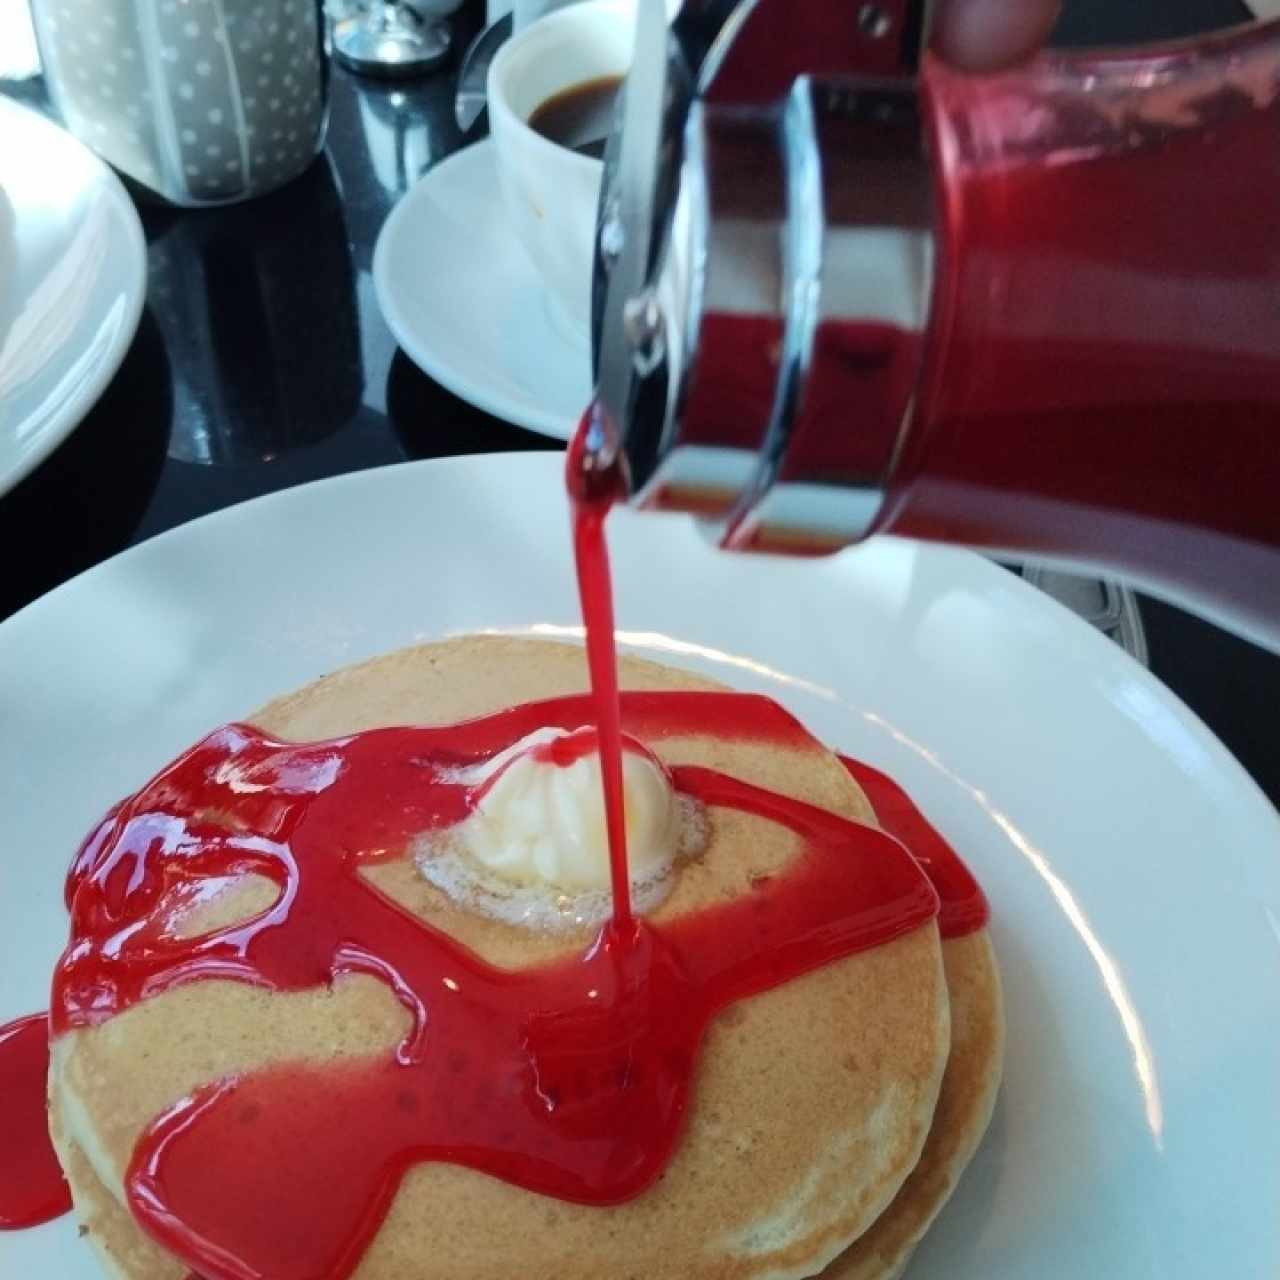 Original pancake